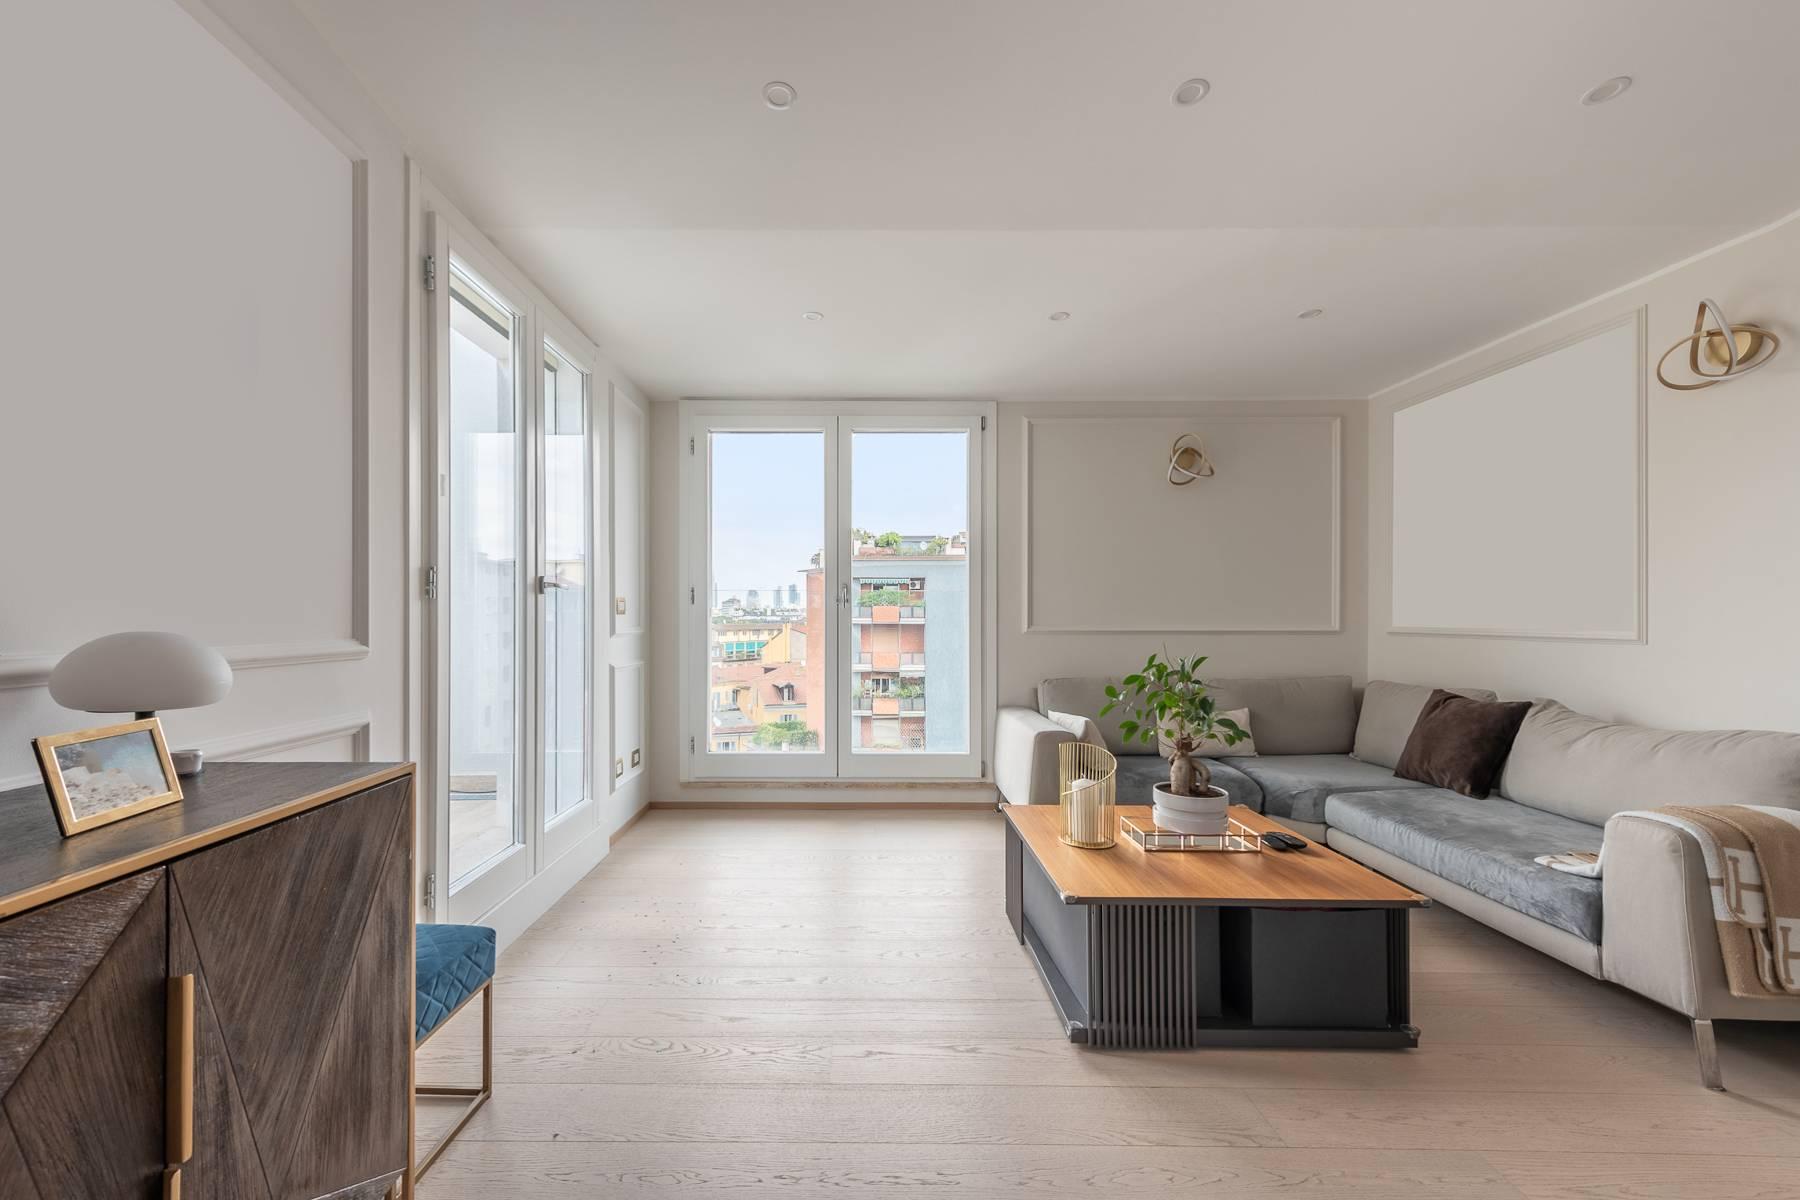 Moderno appartamento su due livelli con terrazzi - 4